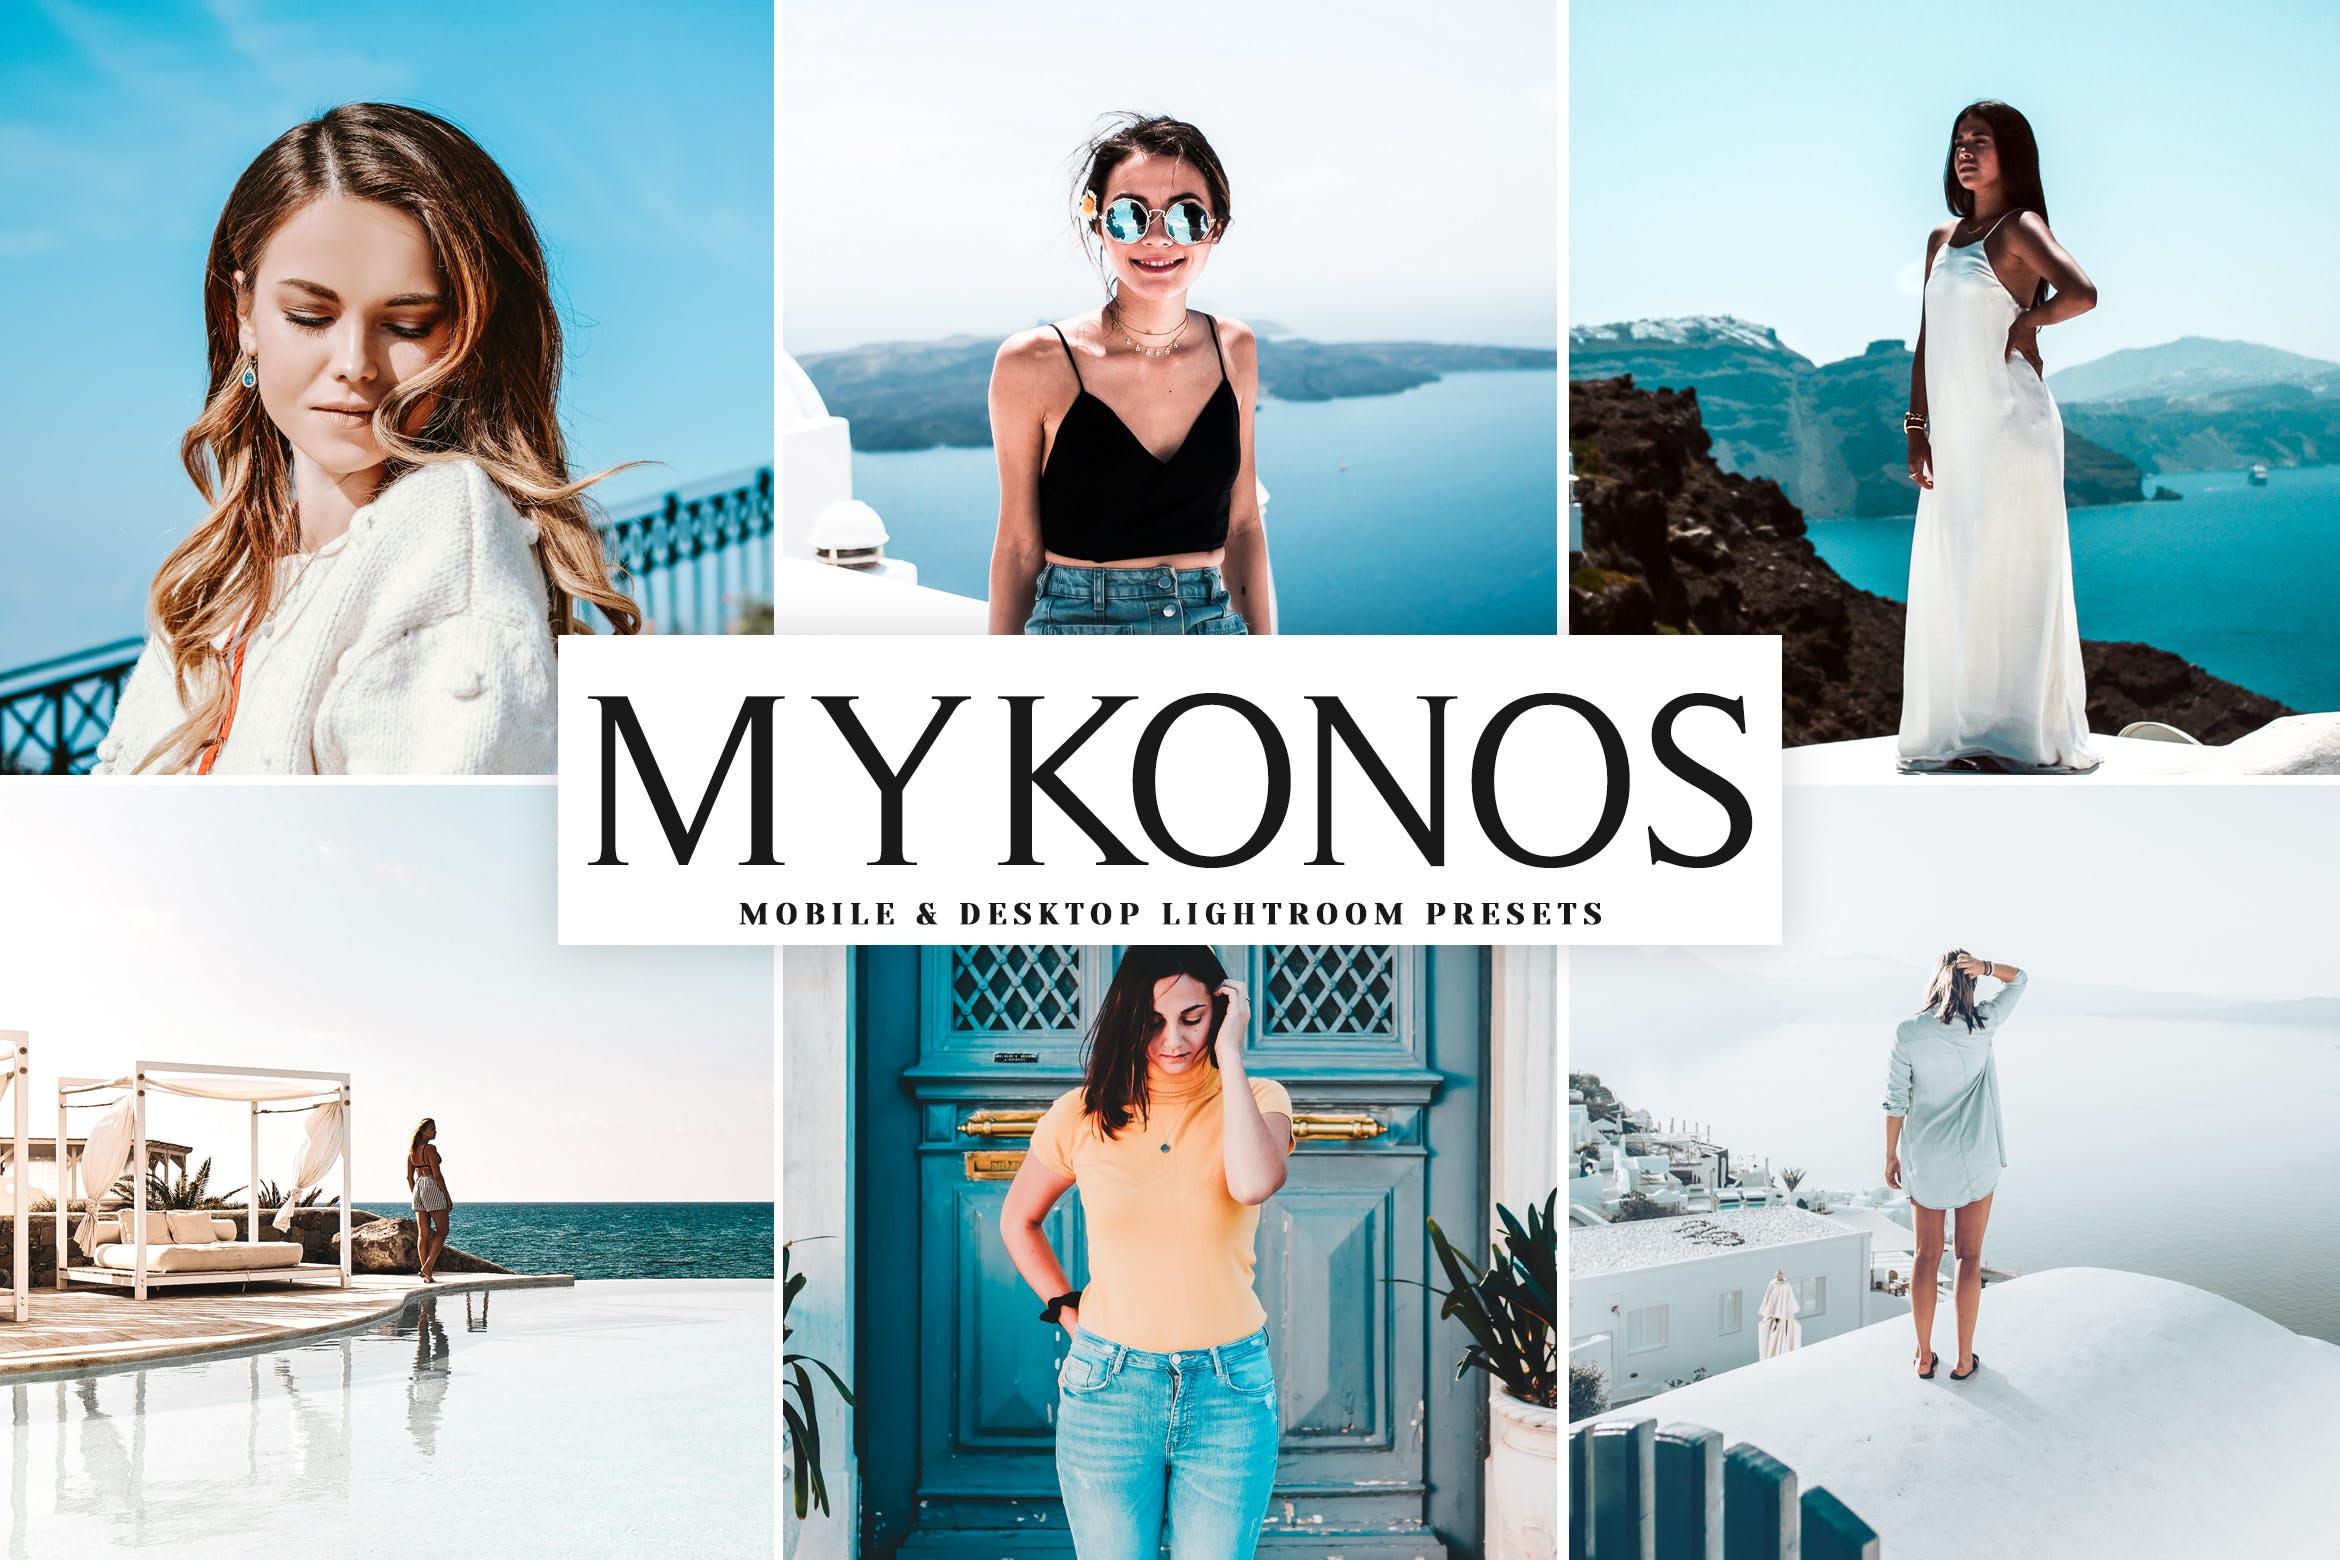 明亮色调风格肖像摄影16设计素材网精选LR预设下载 Mykonos Mobile & Desktop Lightroom Presets插图